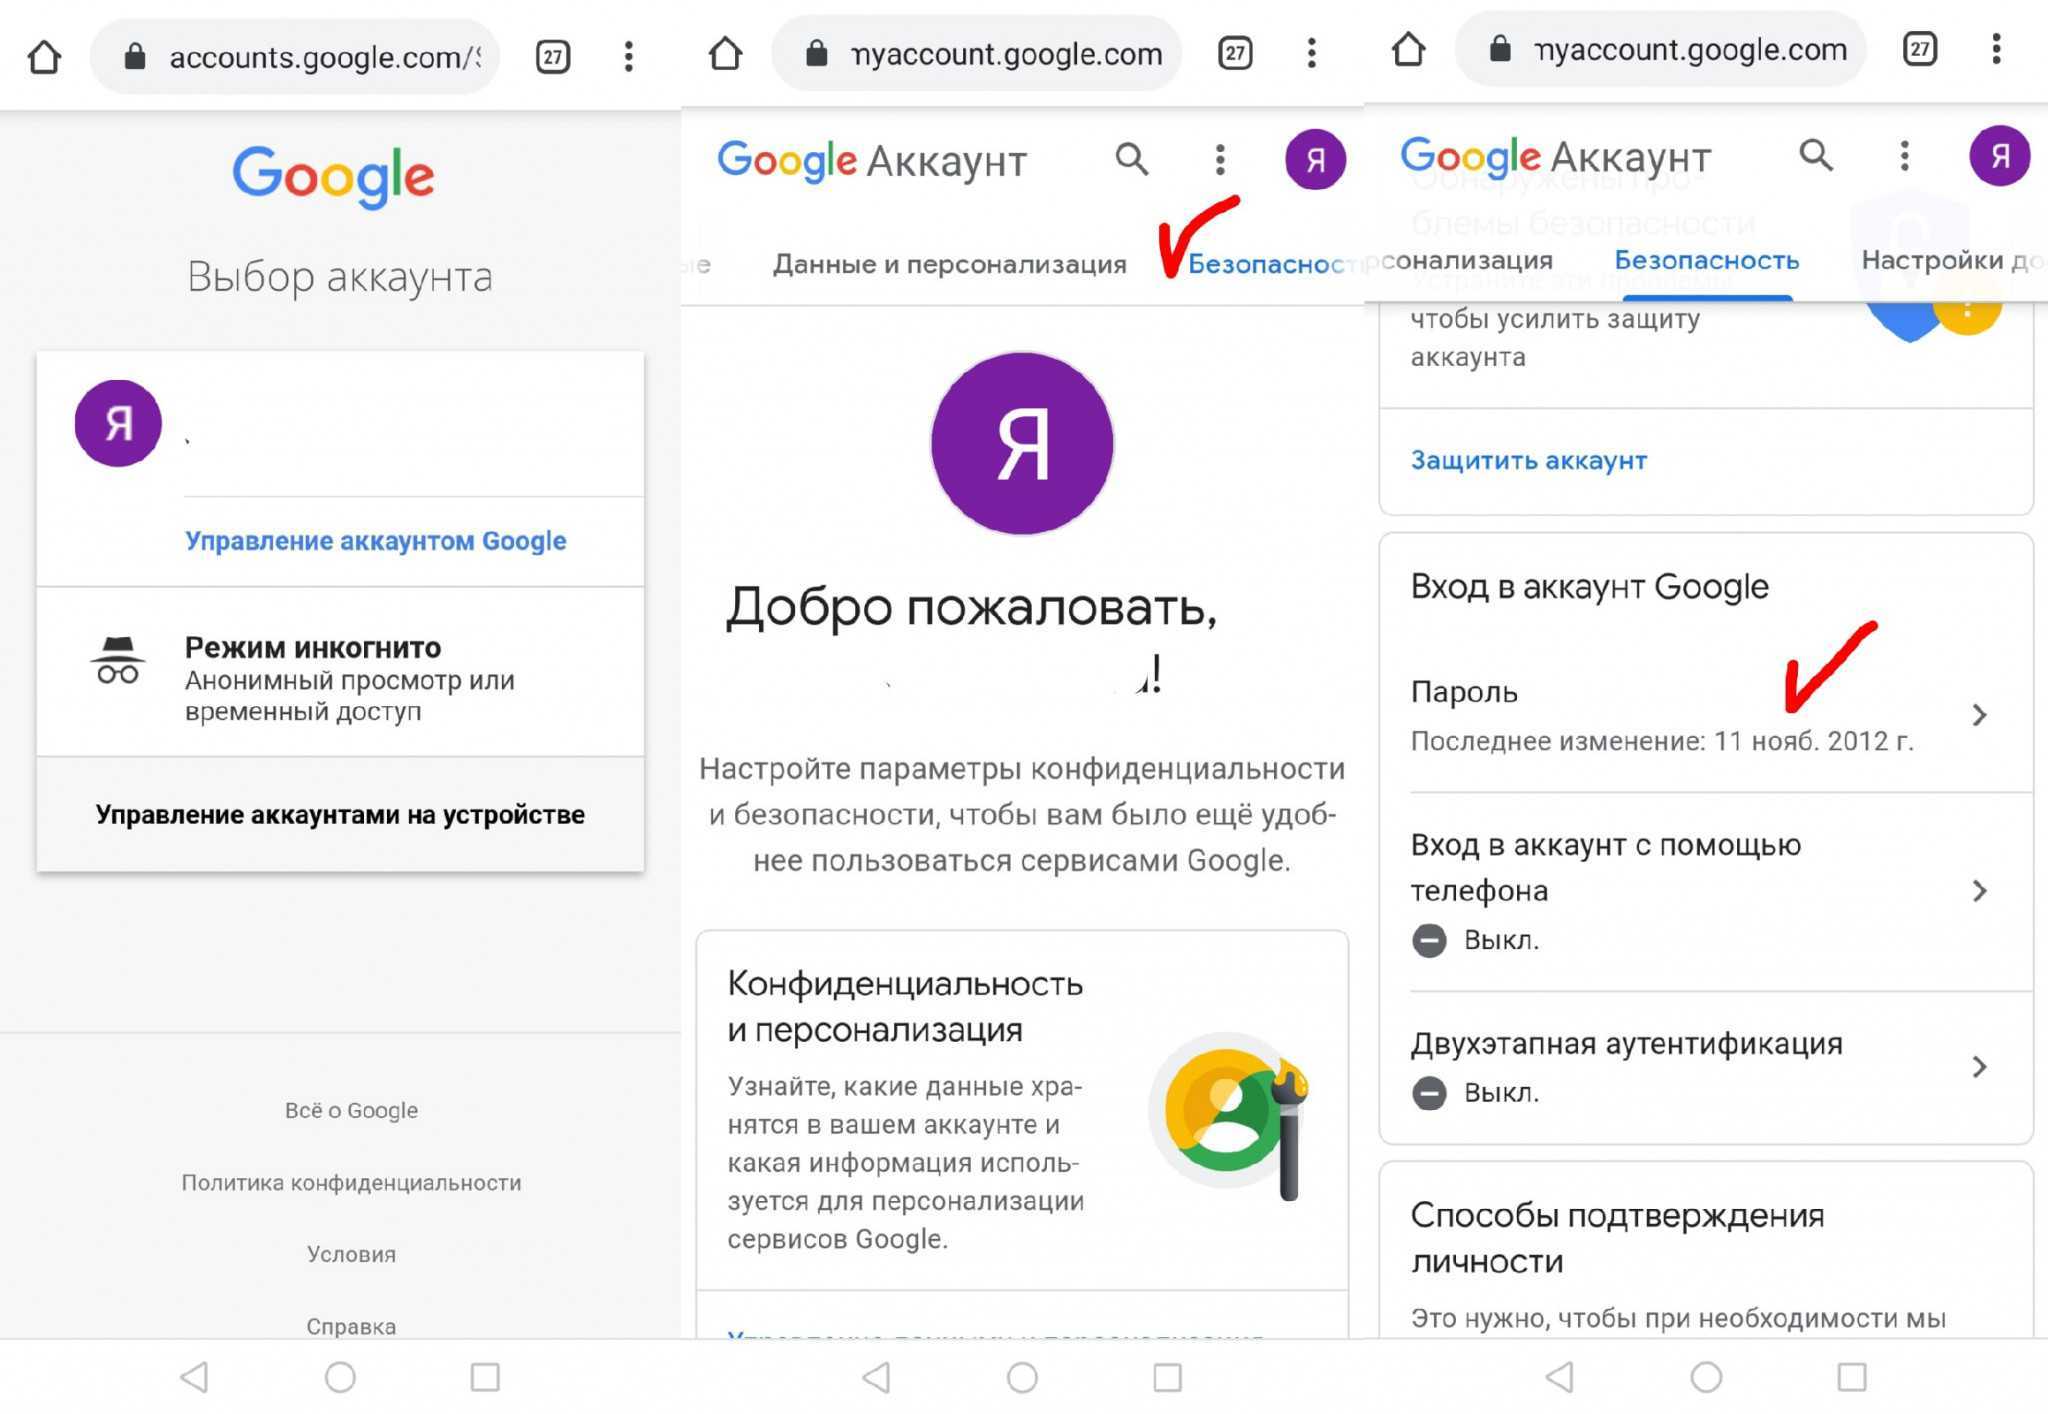 Как сменить аккаунт гугл на андроид - инструкция тарифкин.ру
как сменить аккаунт гугл на андроид - инструкция